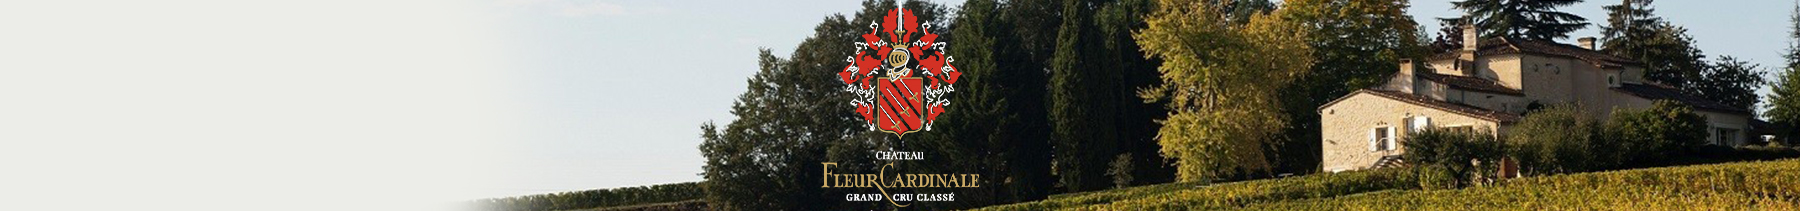 Château Fleur Cardinale